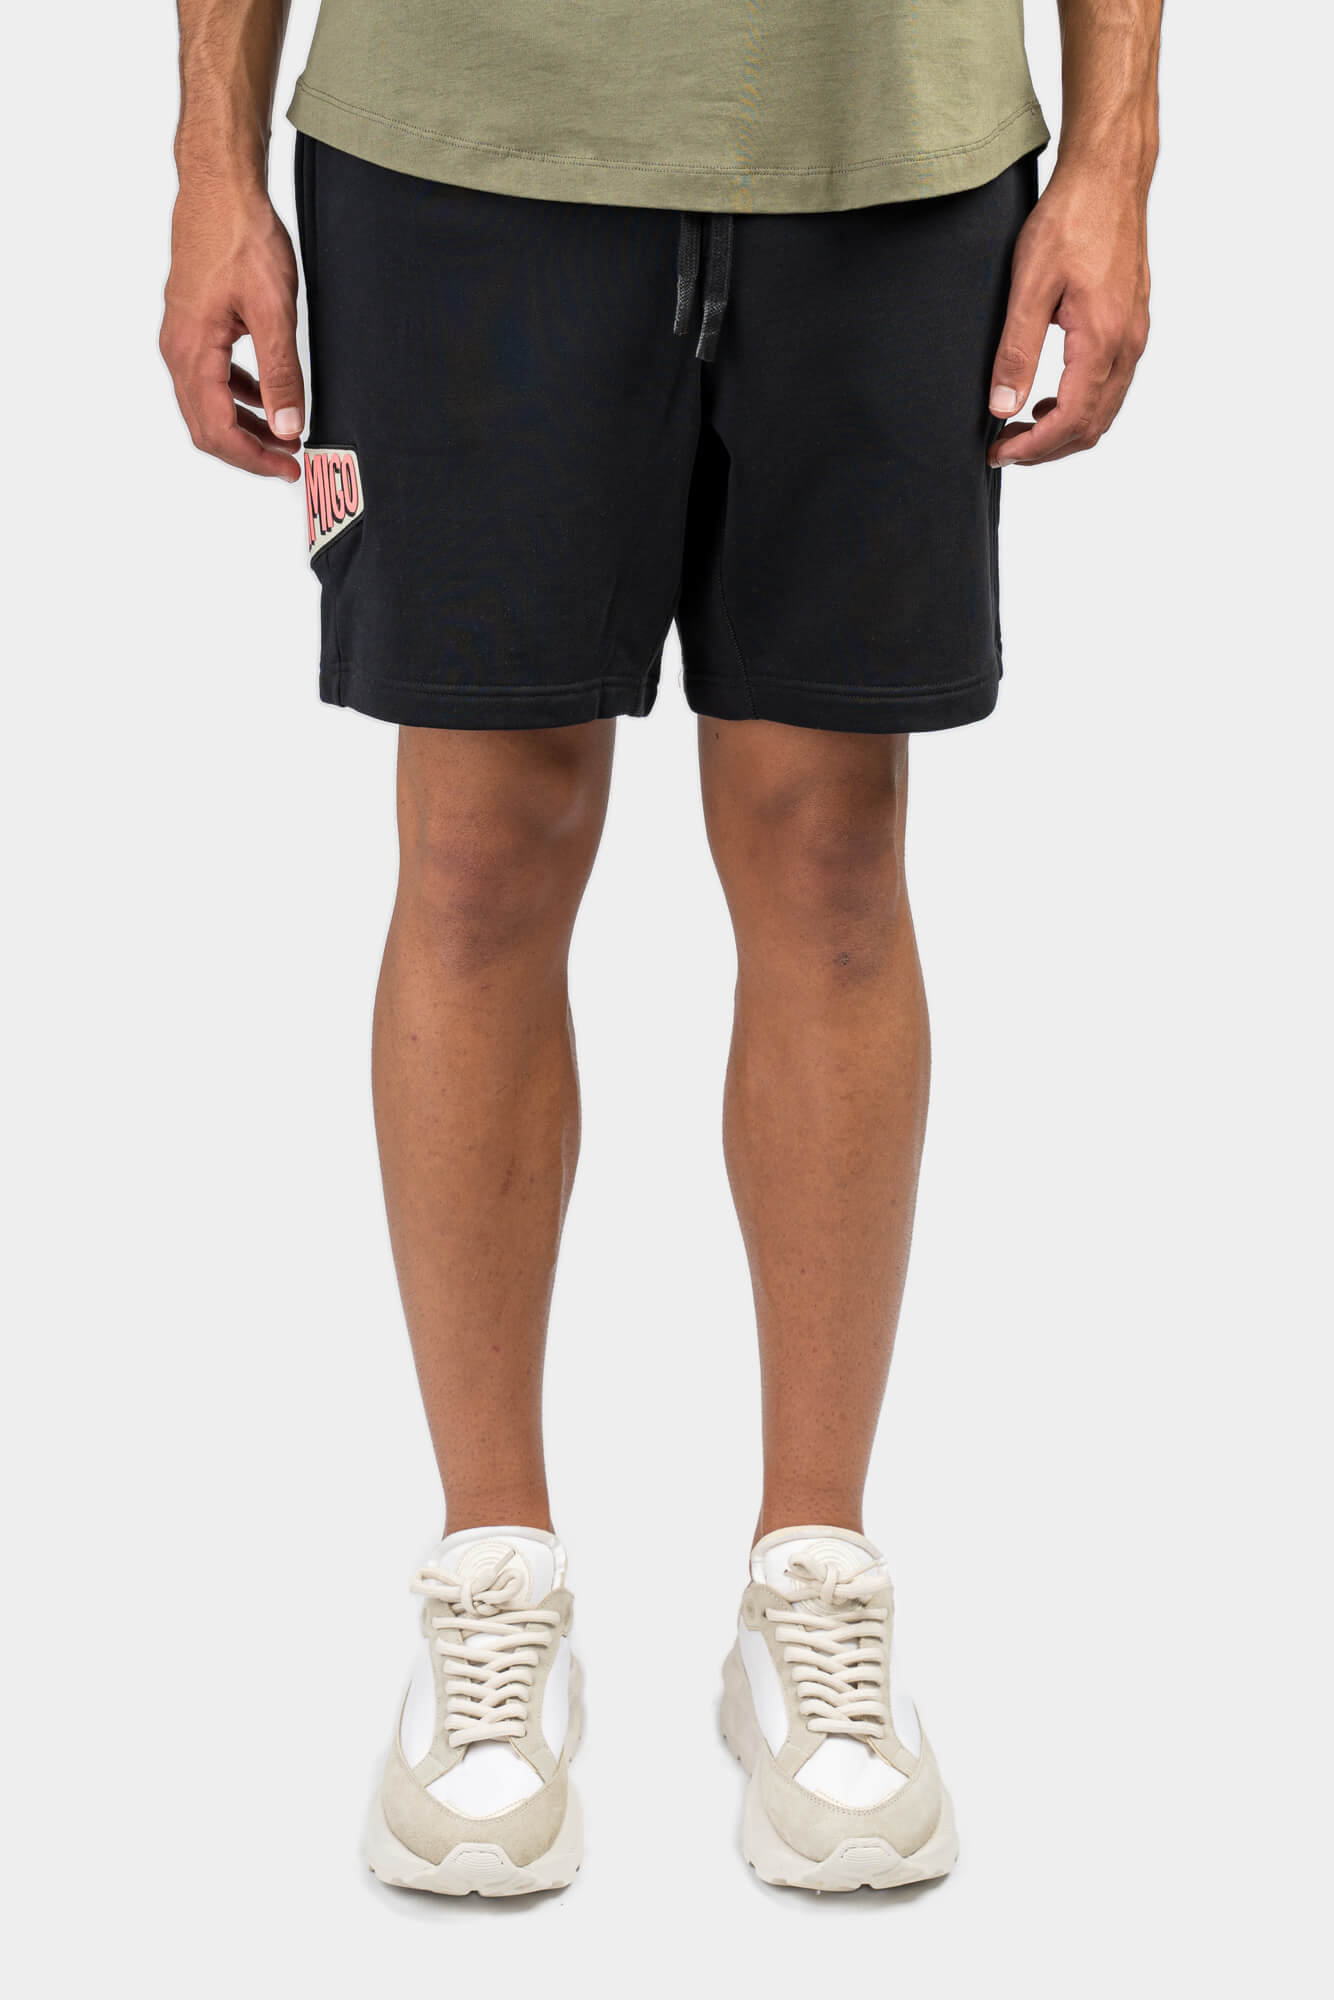 INIMIGO Patch Oversized Shorts